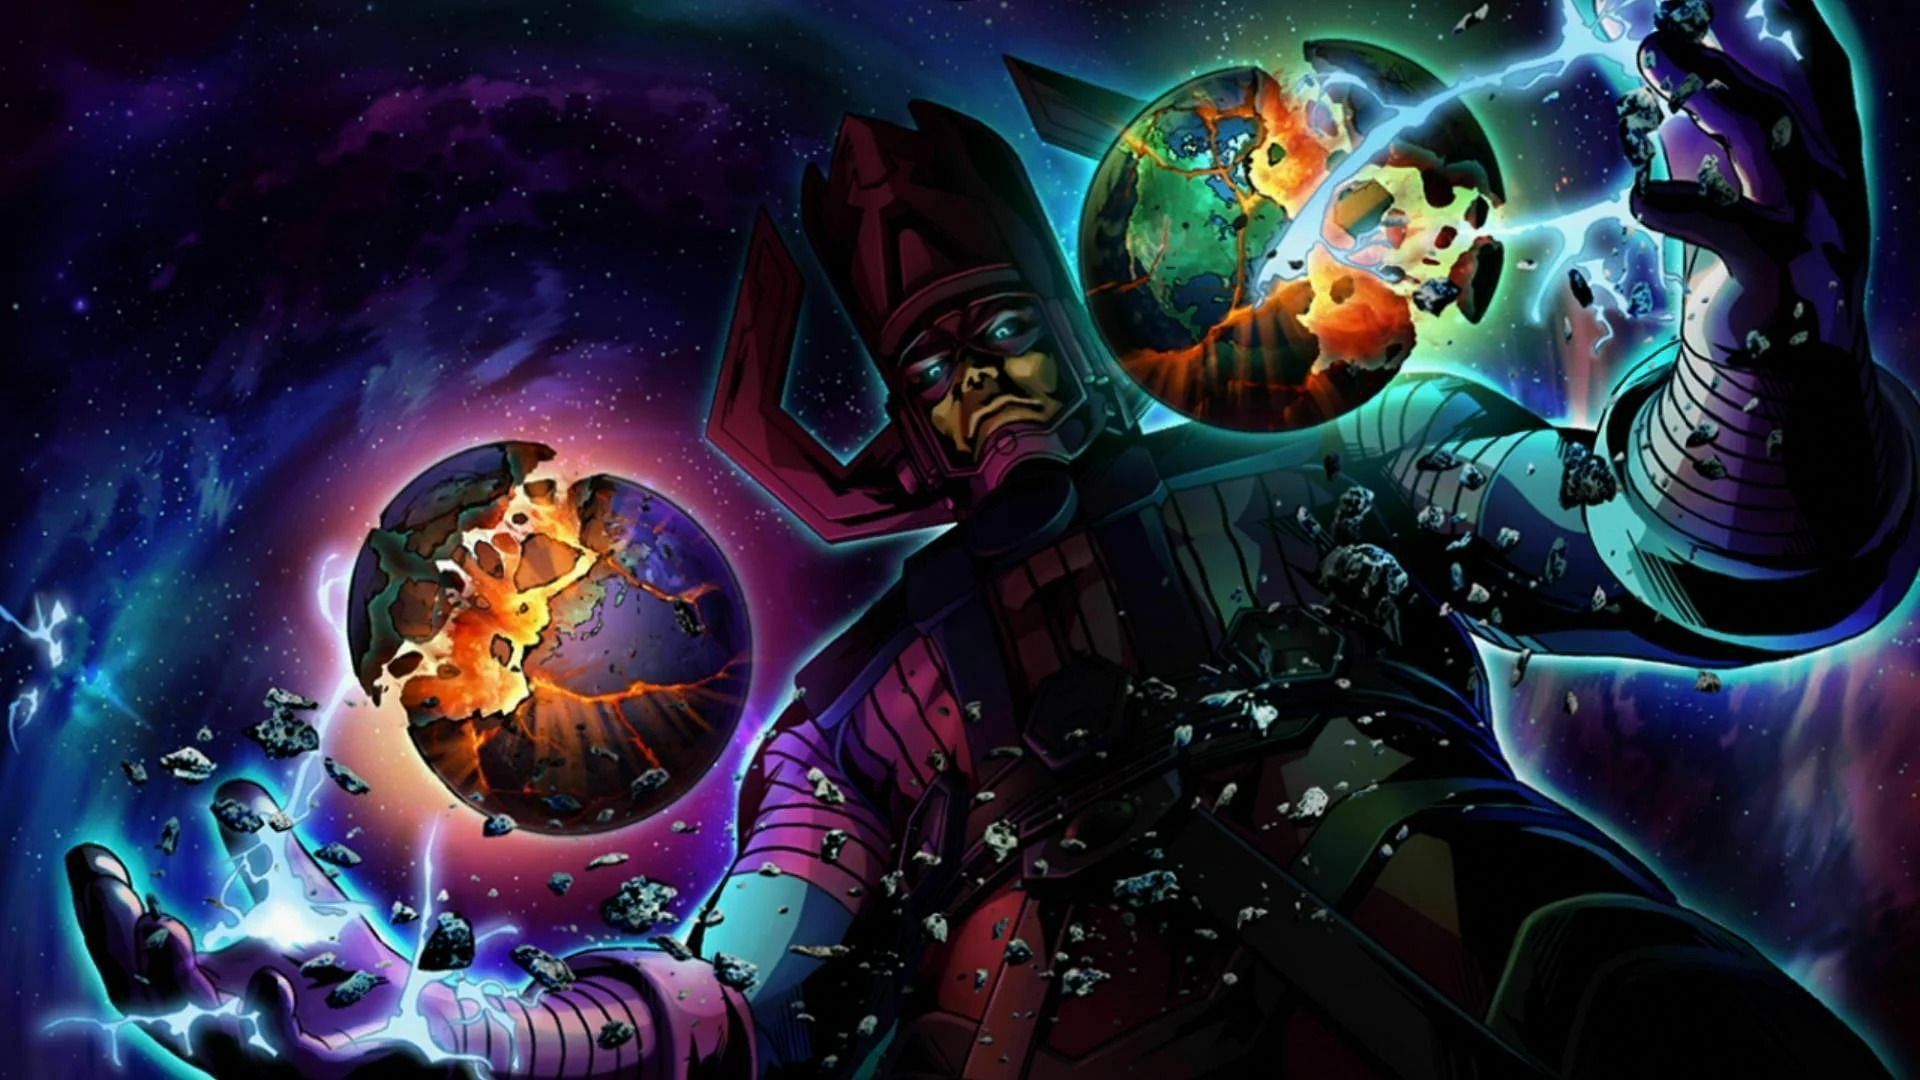 Galactus (Image via Marvel)